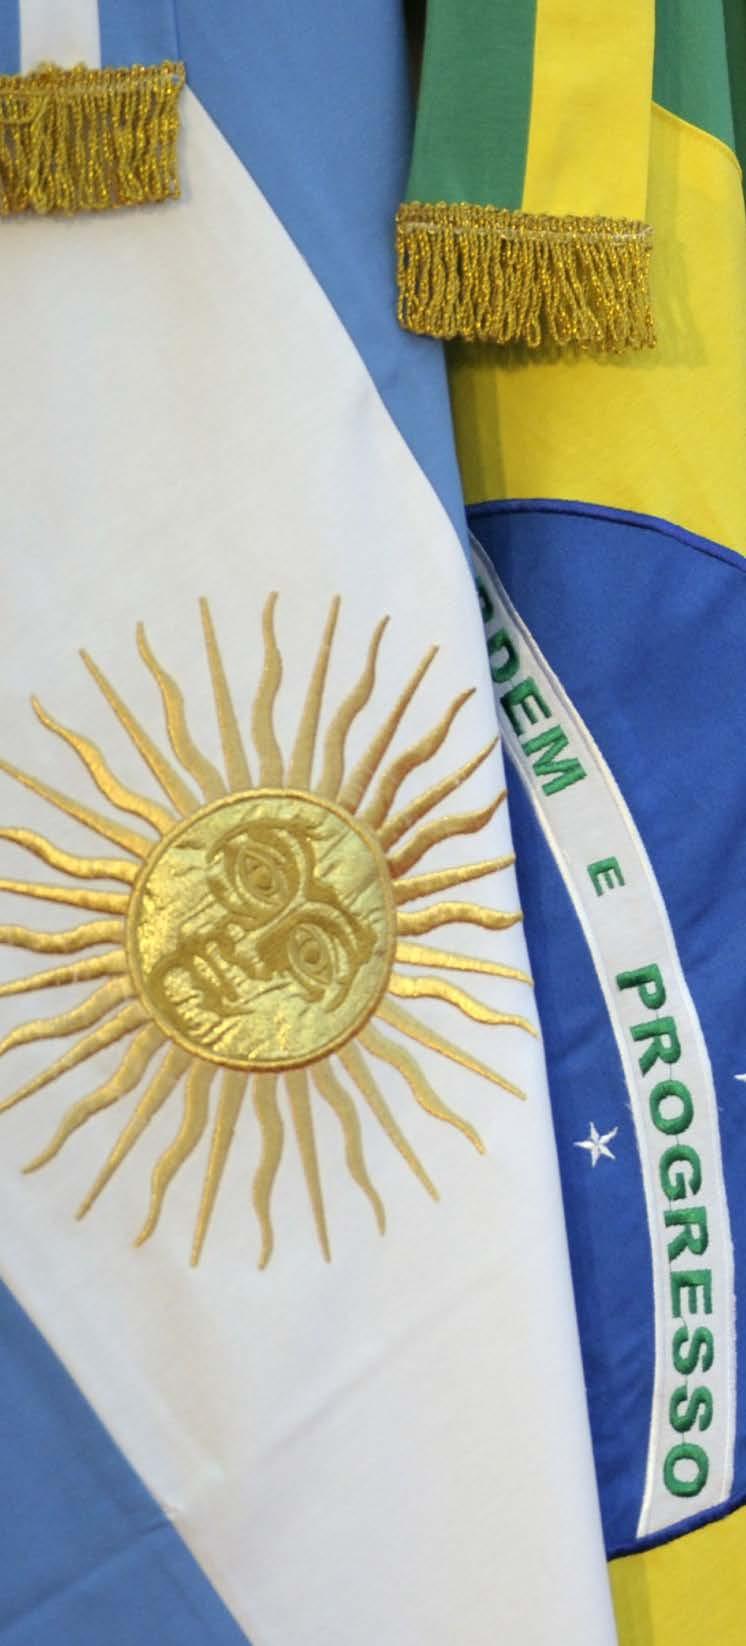 Economía ARGENTINA FORMA PARTE DEL MERCOSUR El Mercosur es el área económica y plataforma industrial más dinámica, competitiva y desarrollada, no sólo de Latinoamérica, sino de todo el Hemisferio Sur.